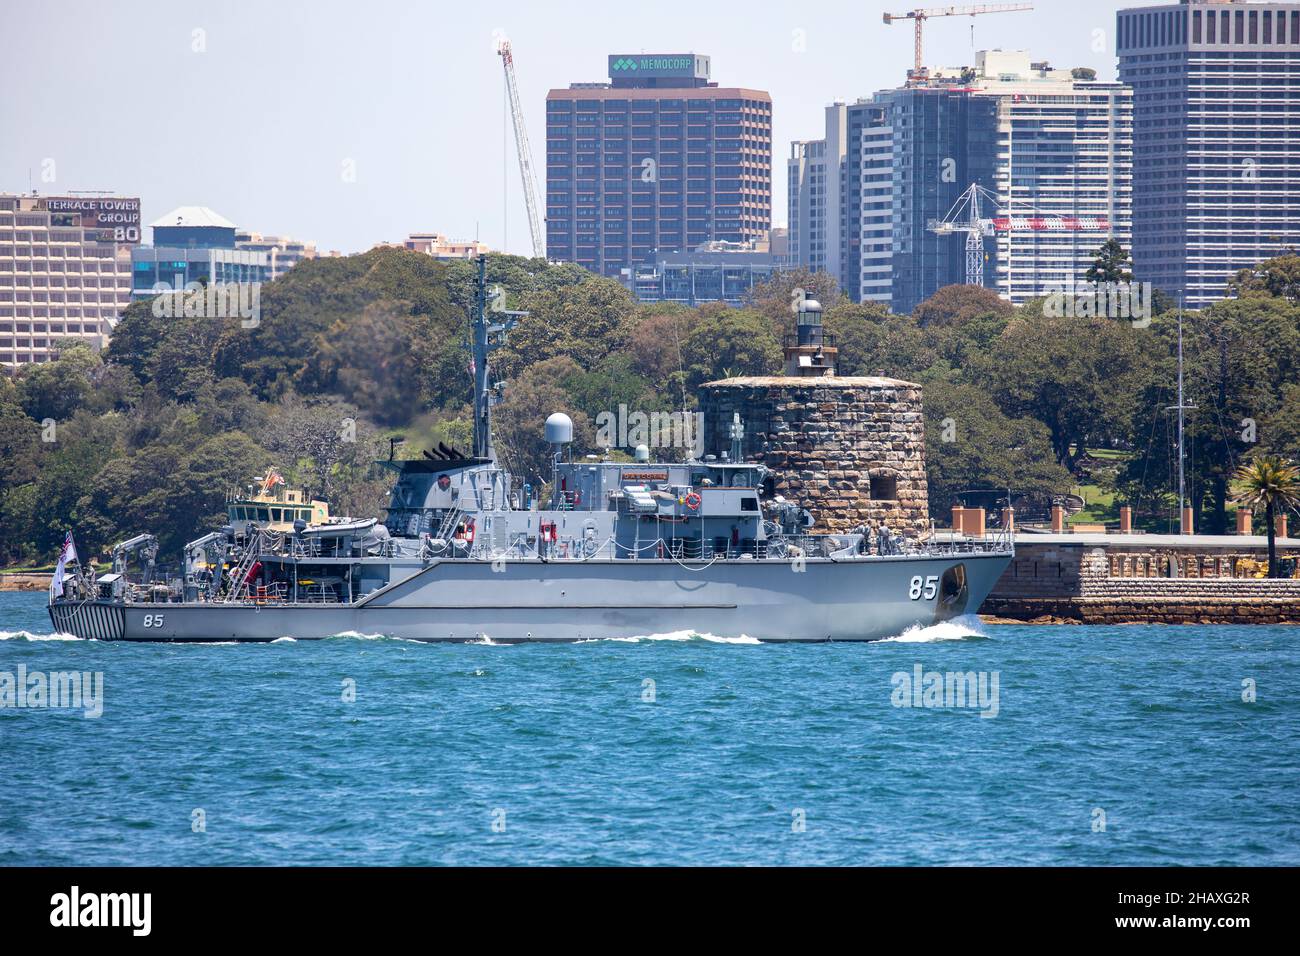 HMAS Gascoyne 2 minehunter vessel of the Royal Australian Navy on Sydney Harbour passing Fort Denison,Sydney,Australia Stock Photo